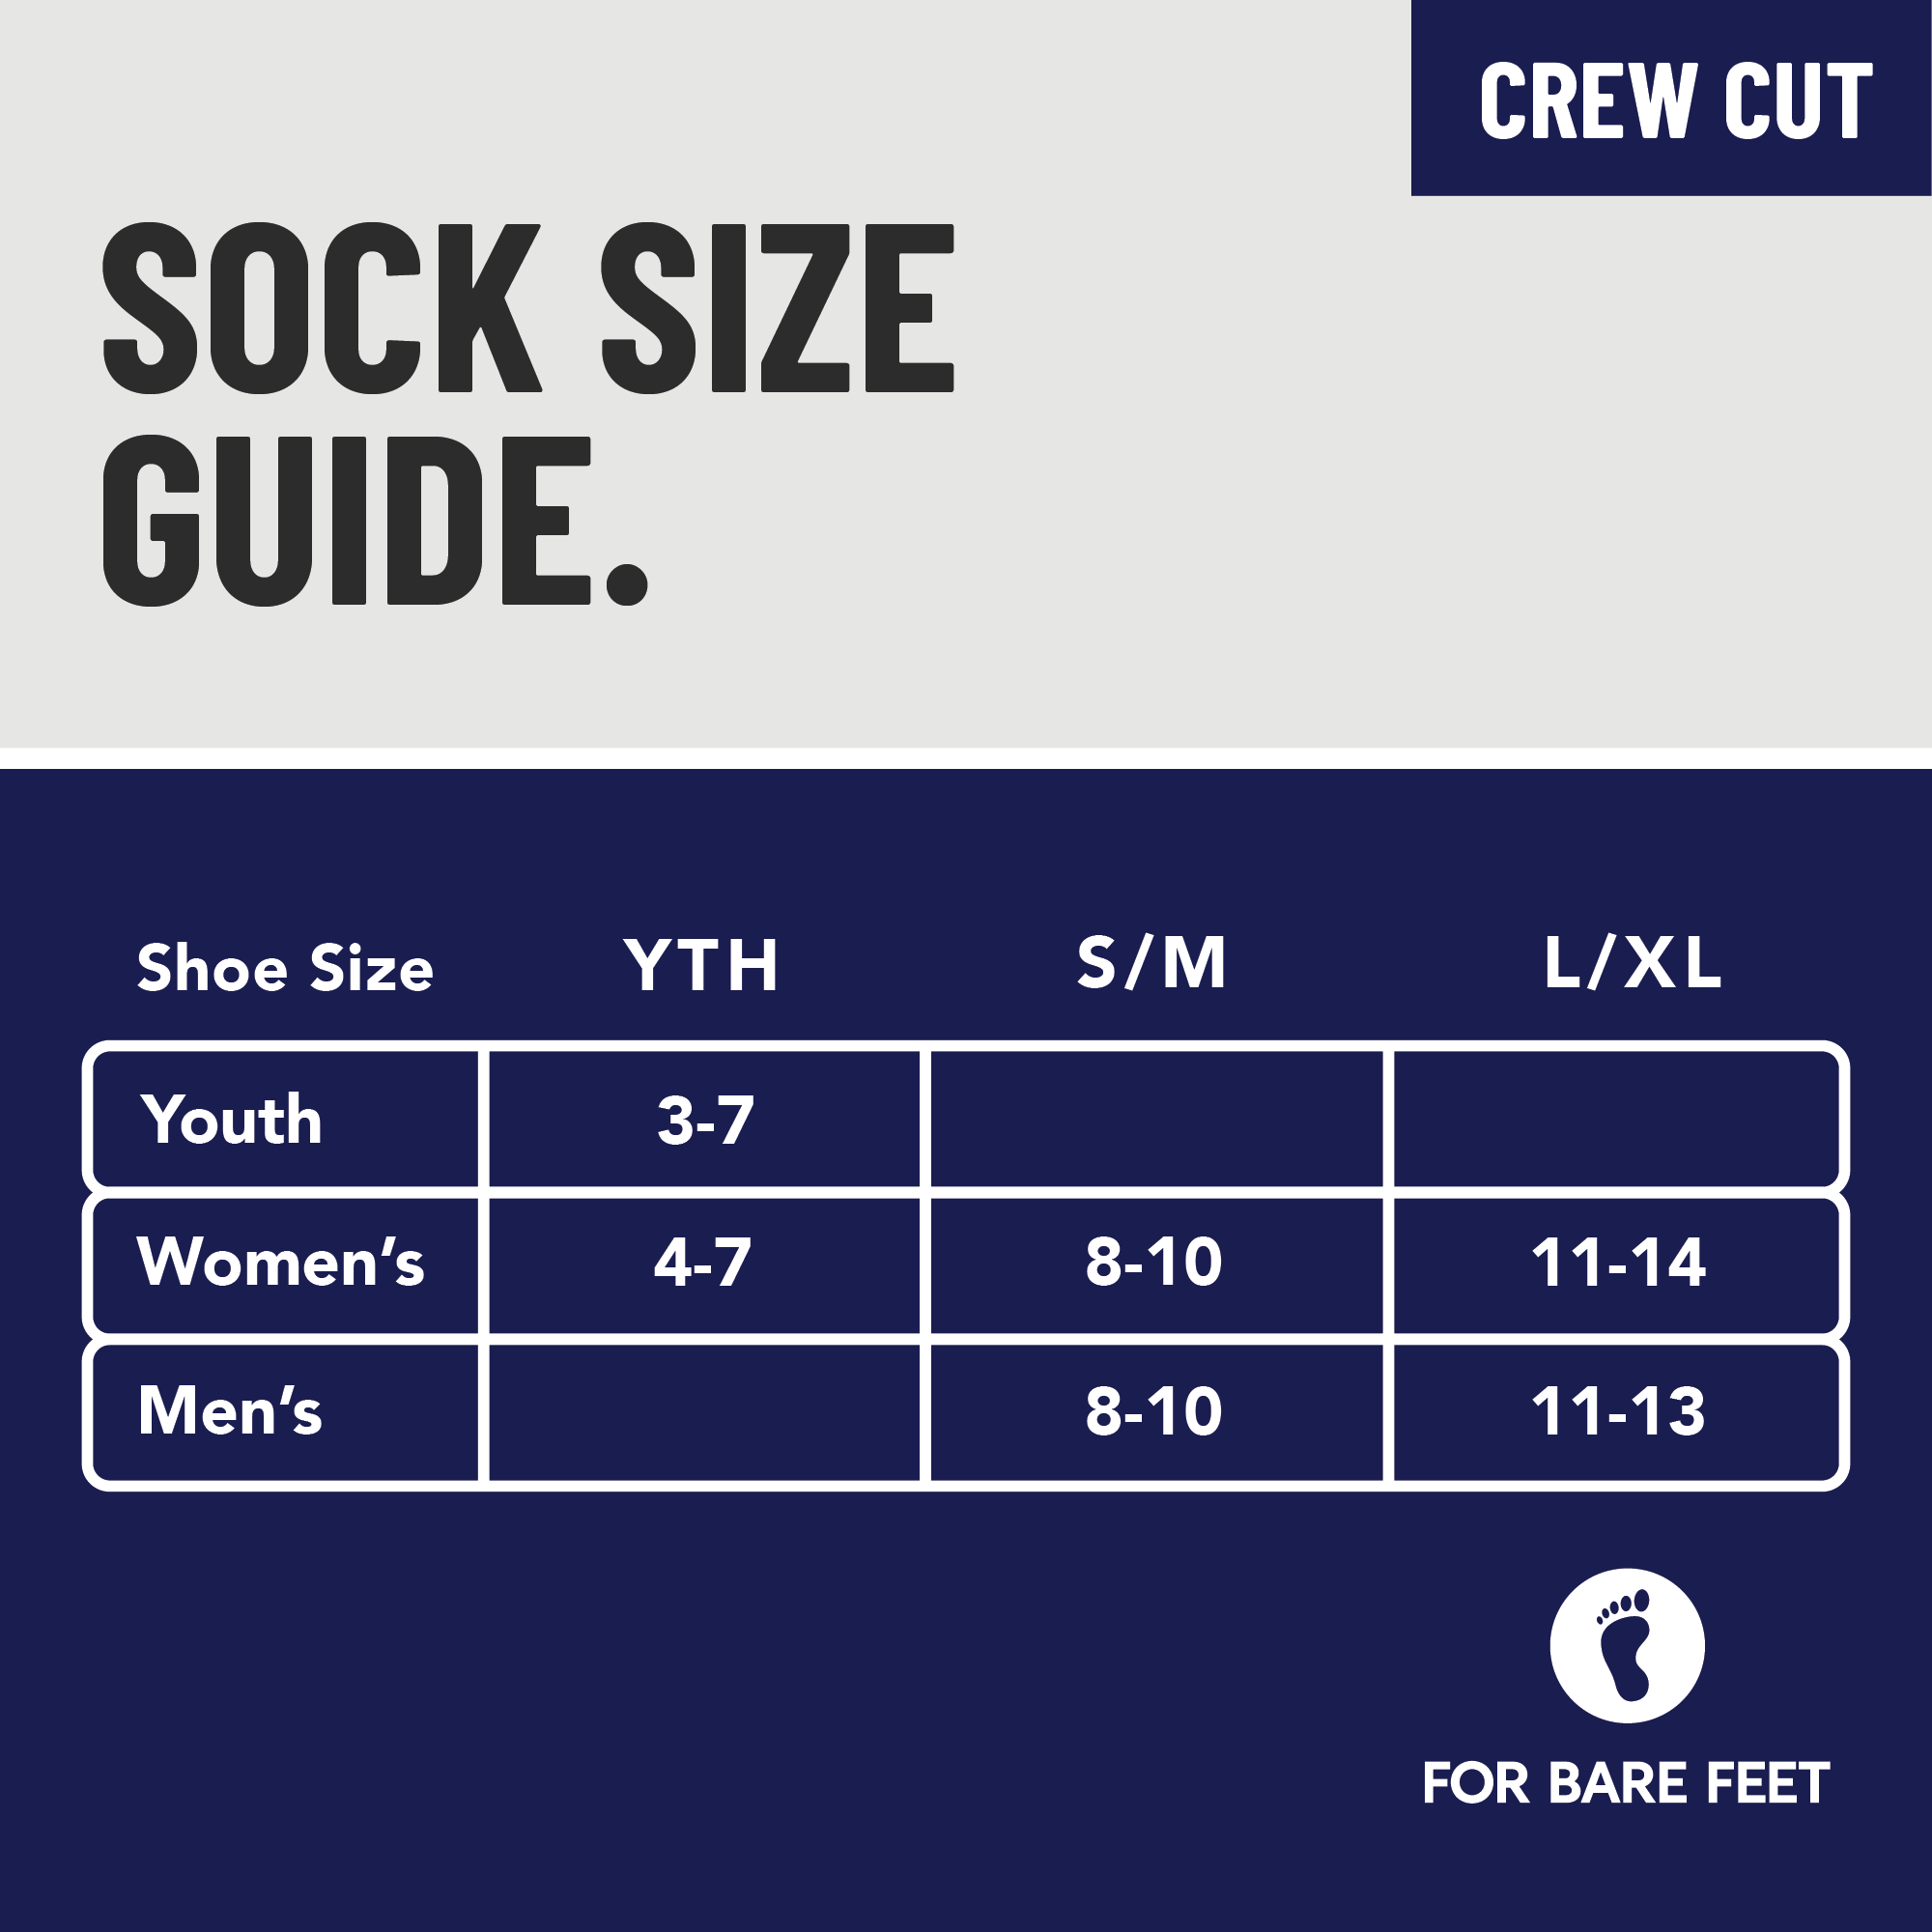 Premium Crew Socks - Navy